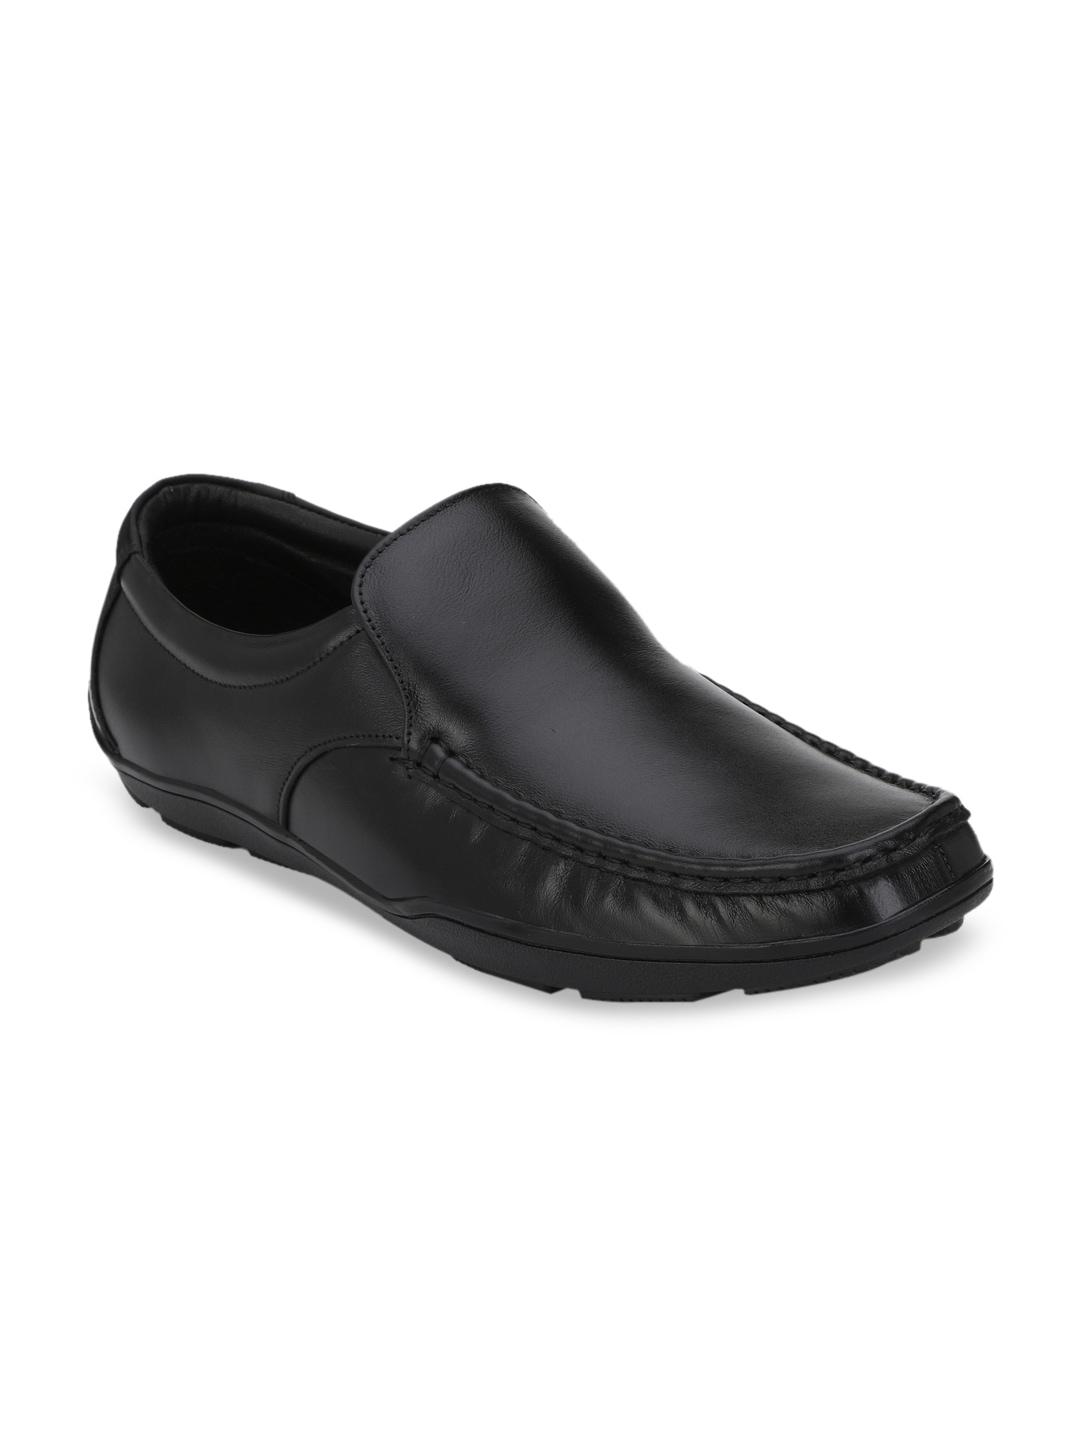 Fentacia Men Black Leather Formal Loafers